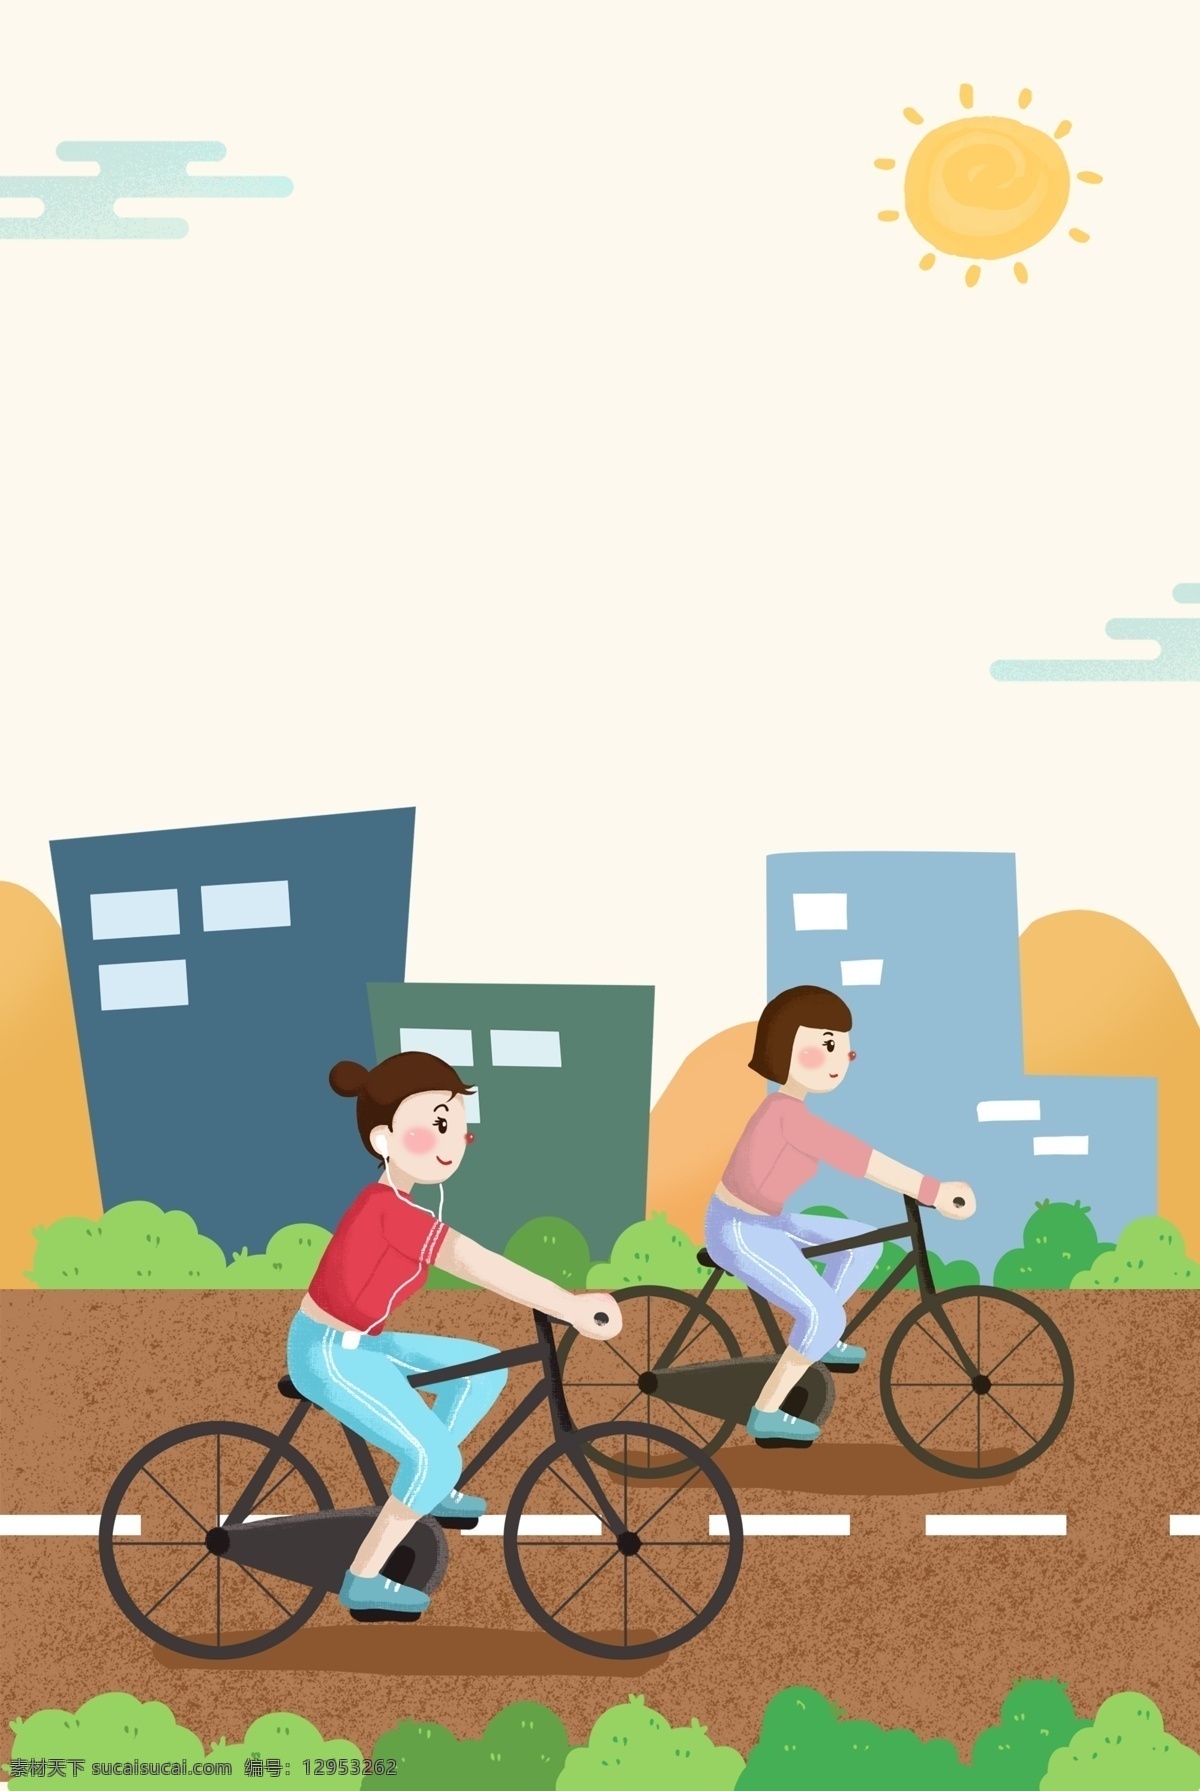 健康 单车 运动 背景 全民运动 骑车 楼房 太阳 云朵 草丛 树叶 简约 手绘